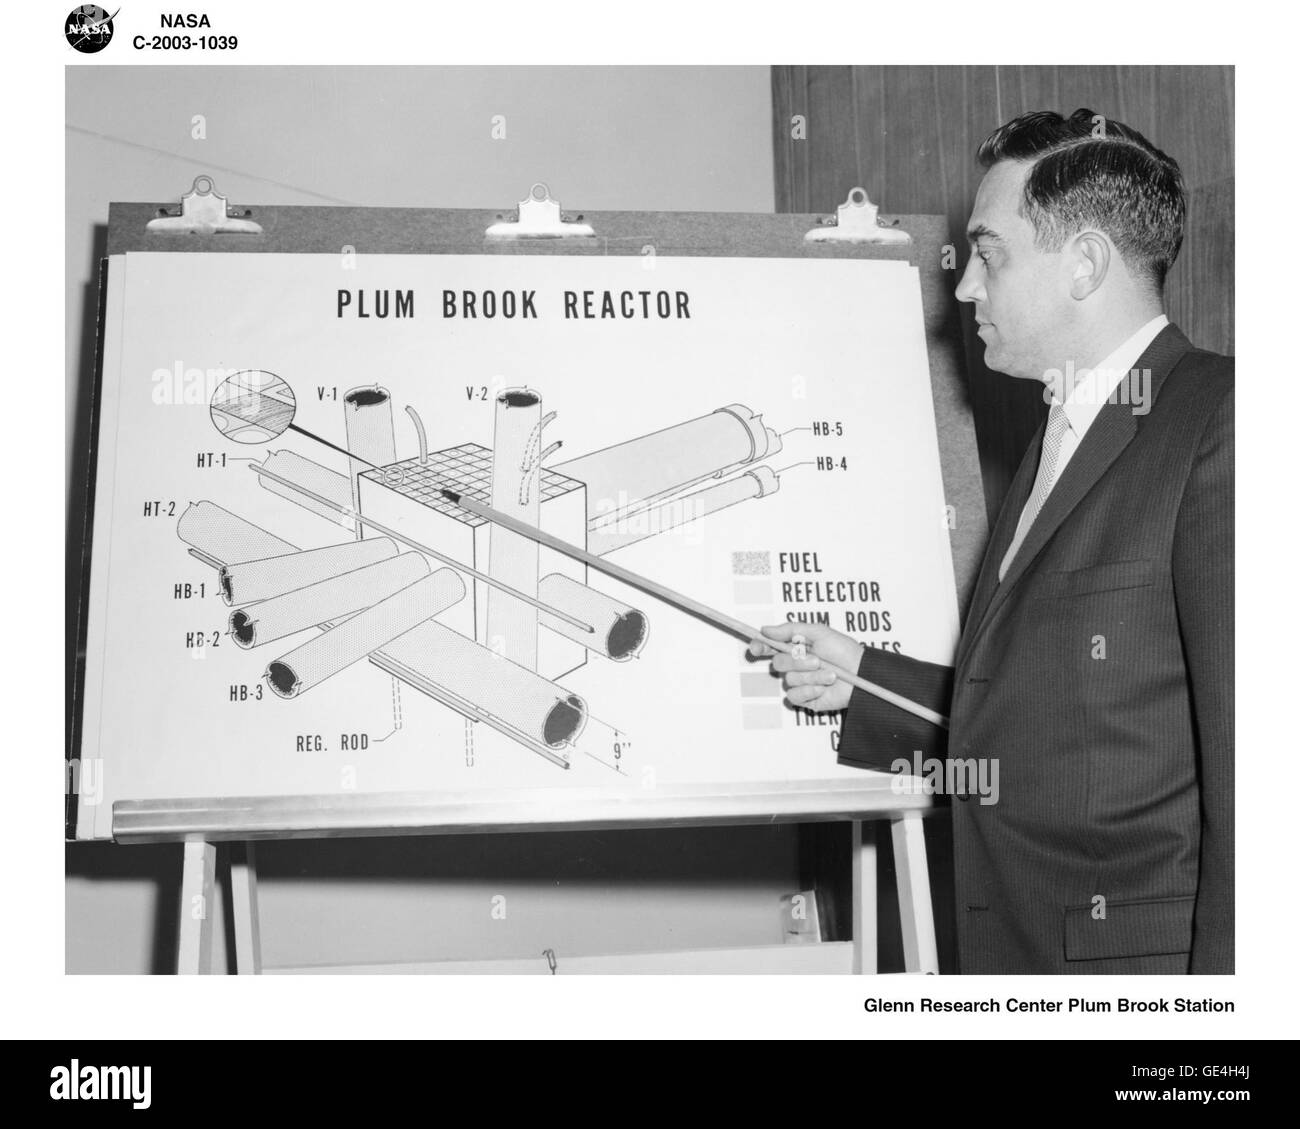 Plum Brook Vertreter erklärt das Diagramm zeigt die wichtigsten Elemente des Reaktorkerns Plum Brook. Die zahlreichen Test Löcher und Kaninchen Röhren waren was die Plum Brook Reaktor einzigartig gemacht. Einige andere Test-Reaktoren in den Vereinigten Staaten hatte die Fähigkeit zu bestrahlen, da viele Materialien gleichzeitig zu testen.  Bild-Nr.: C-2003-1039 Stockfoto